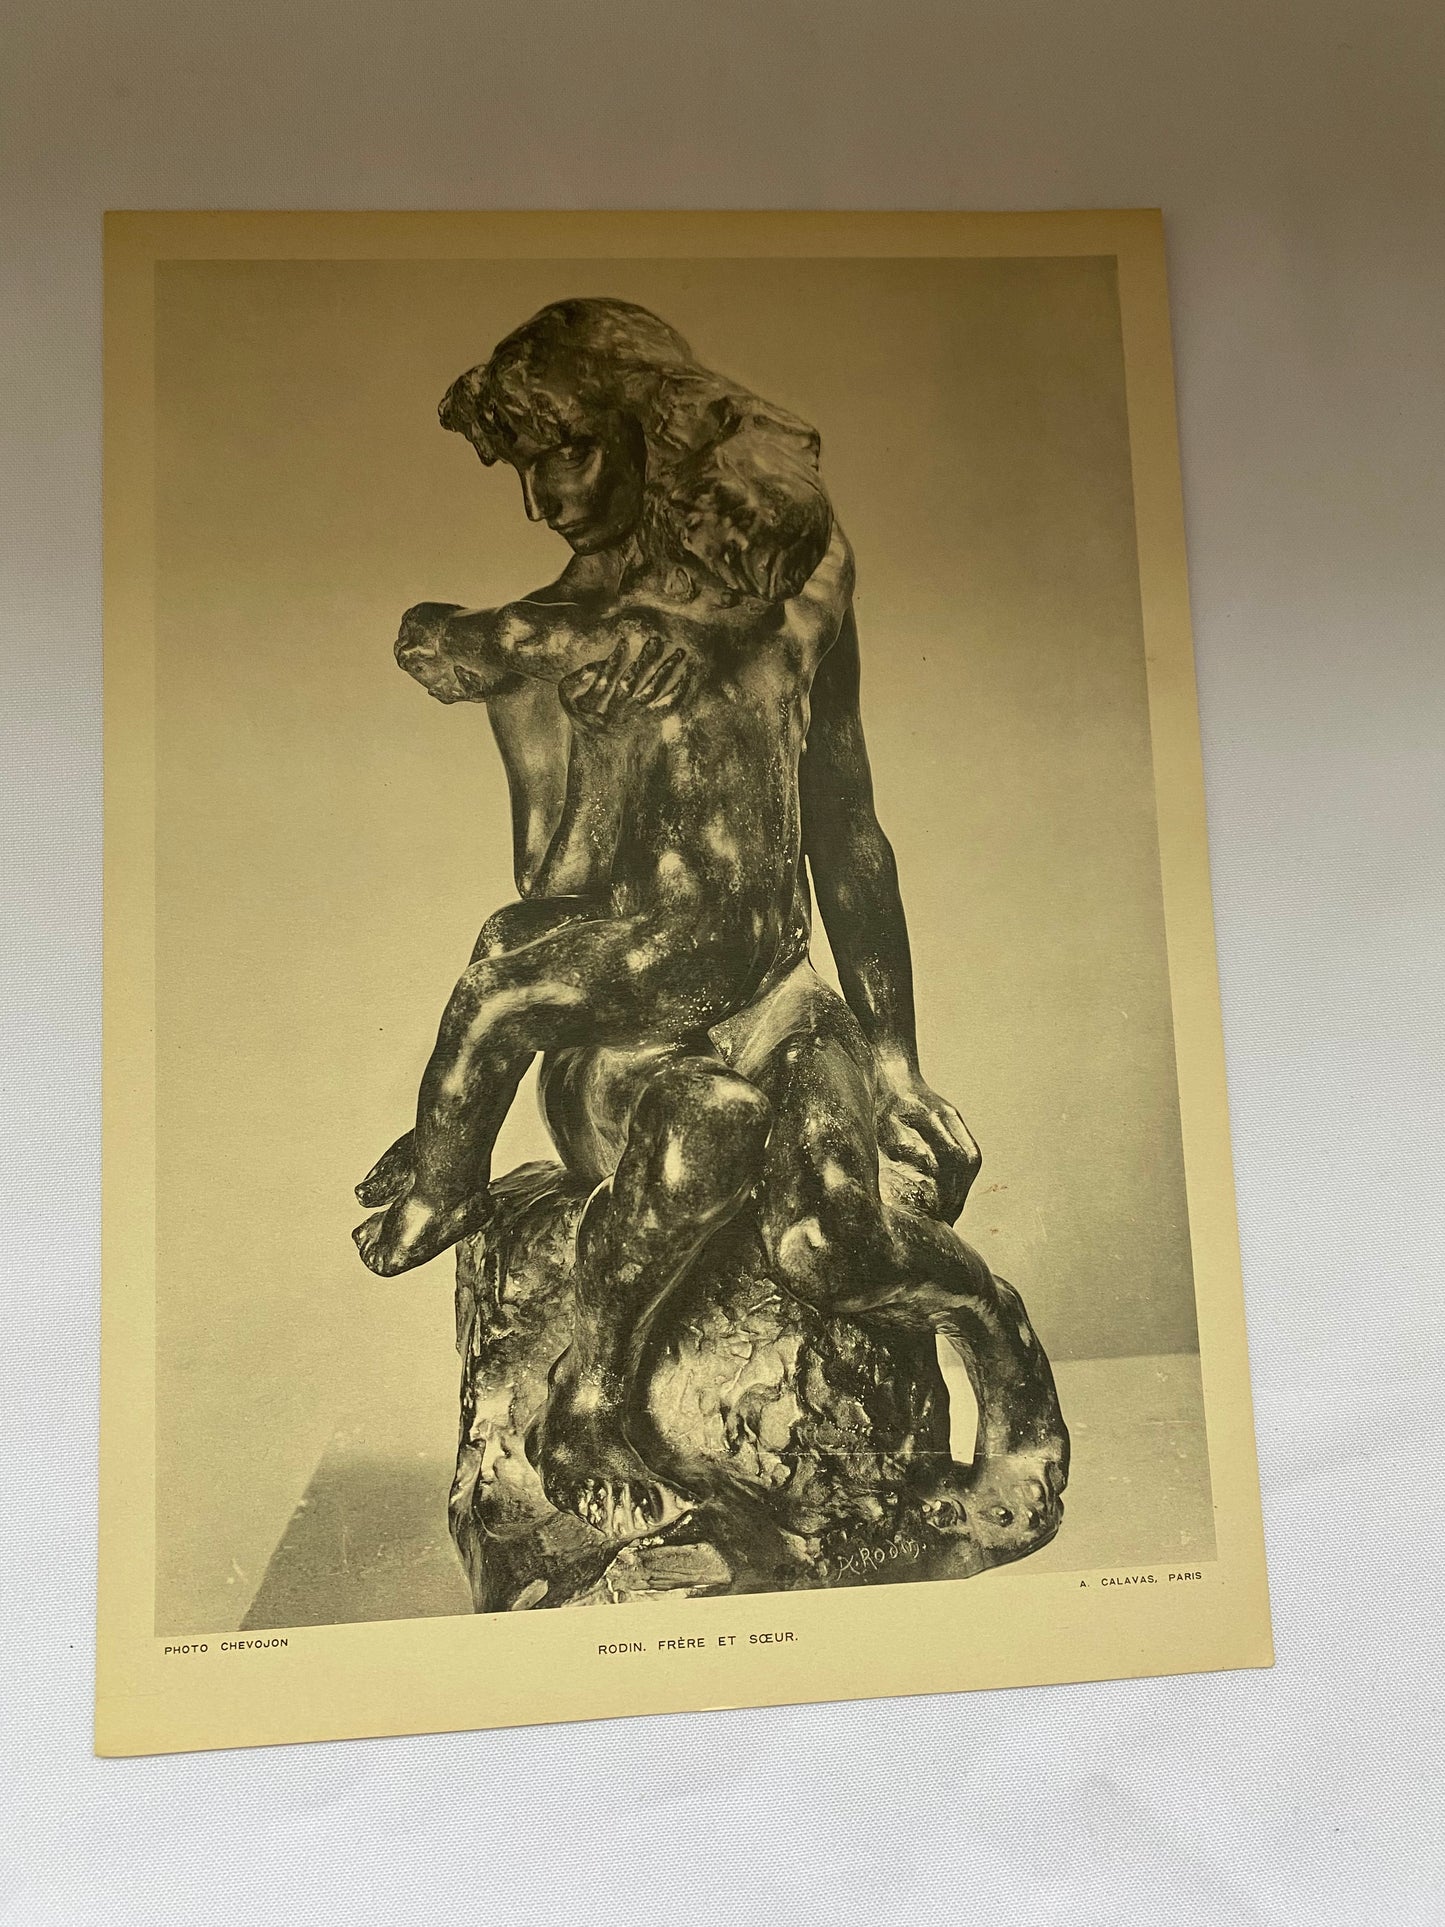 Rodin Seize Sculptures Musee Rodin Paris Art Prints